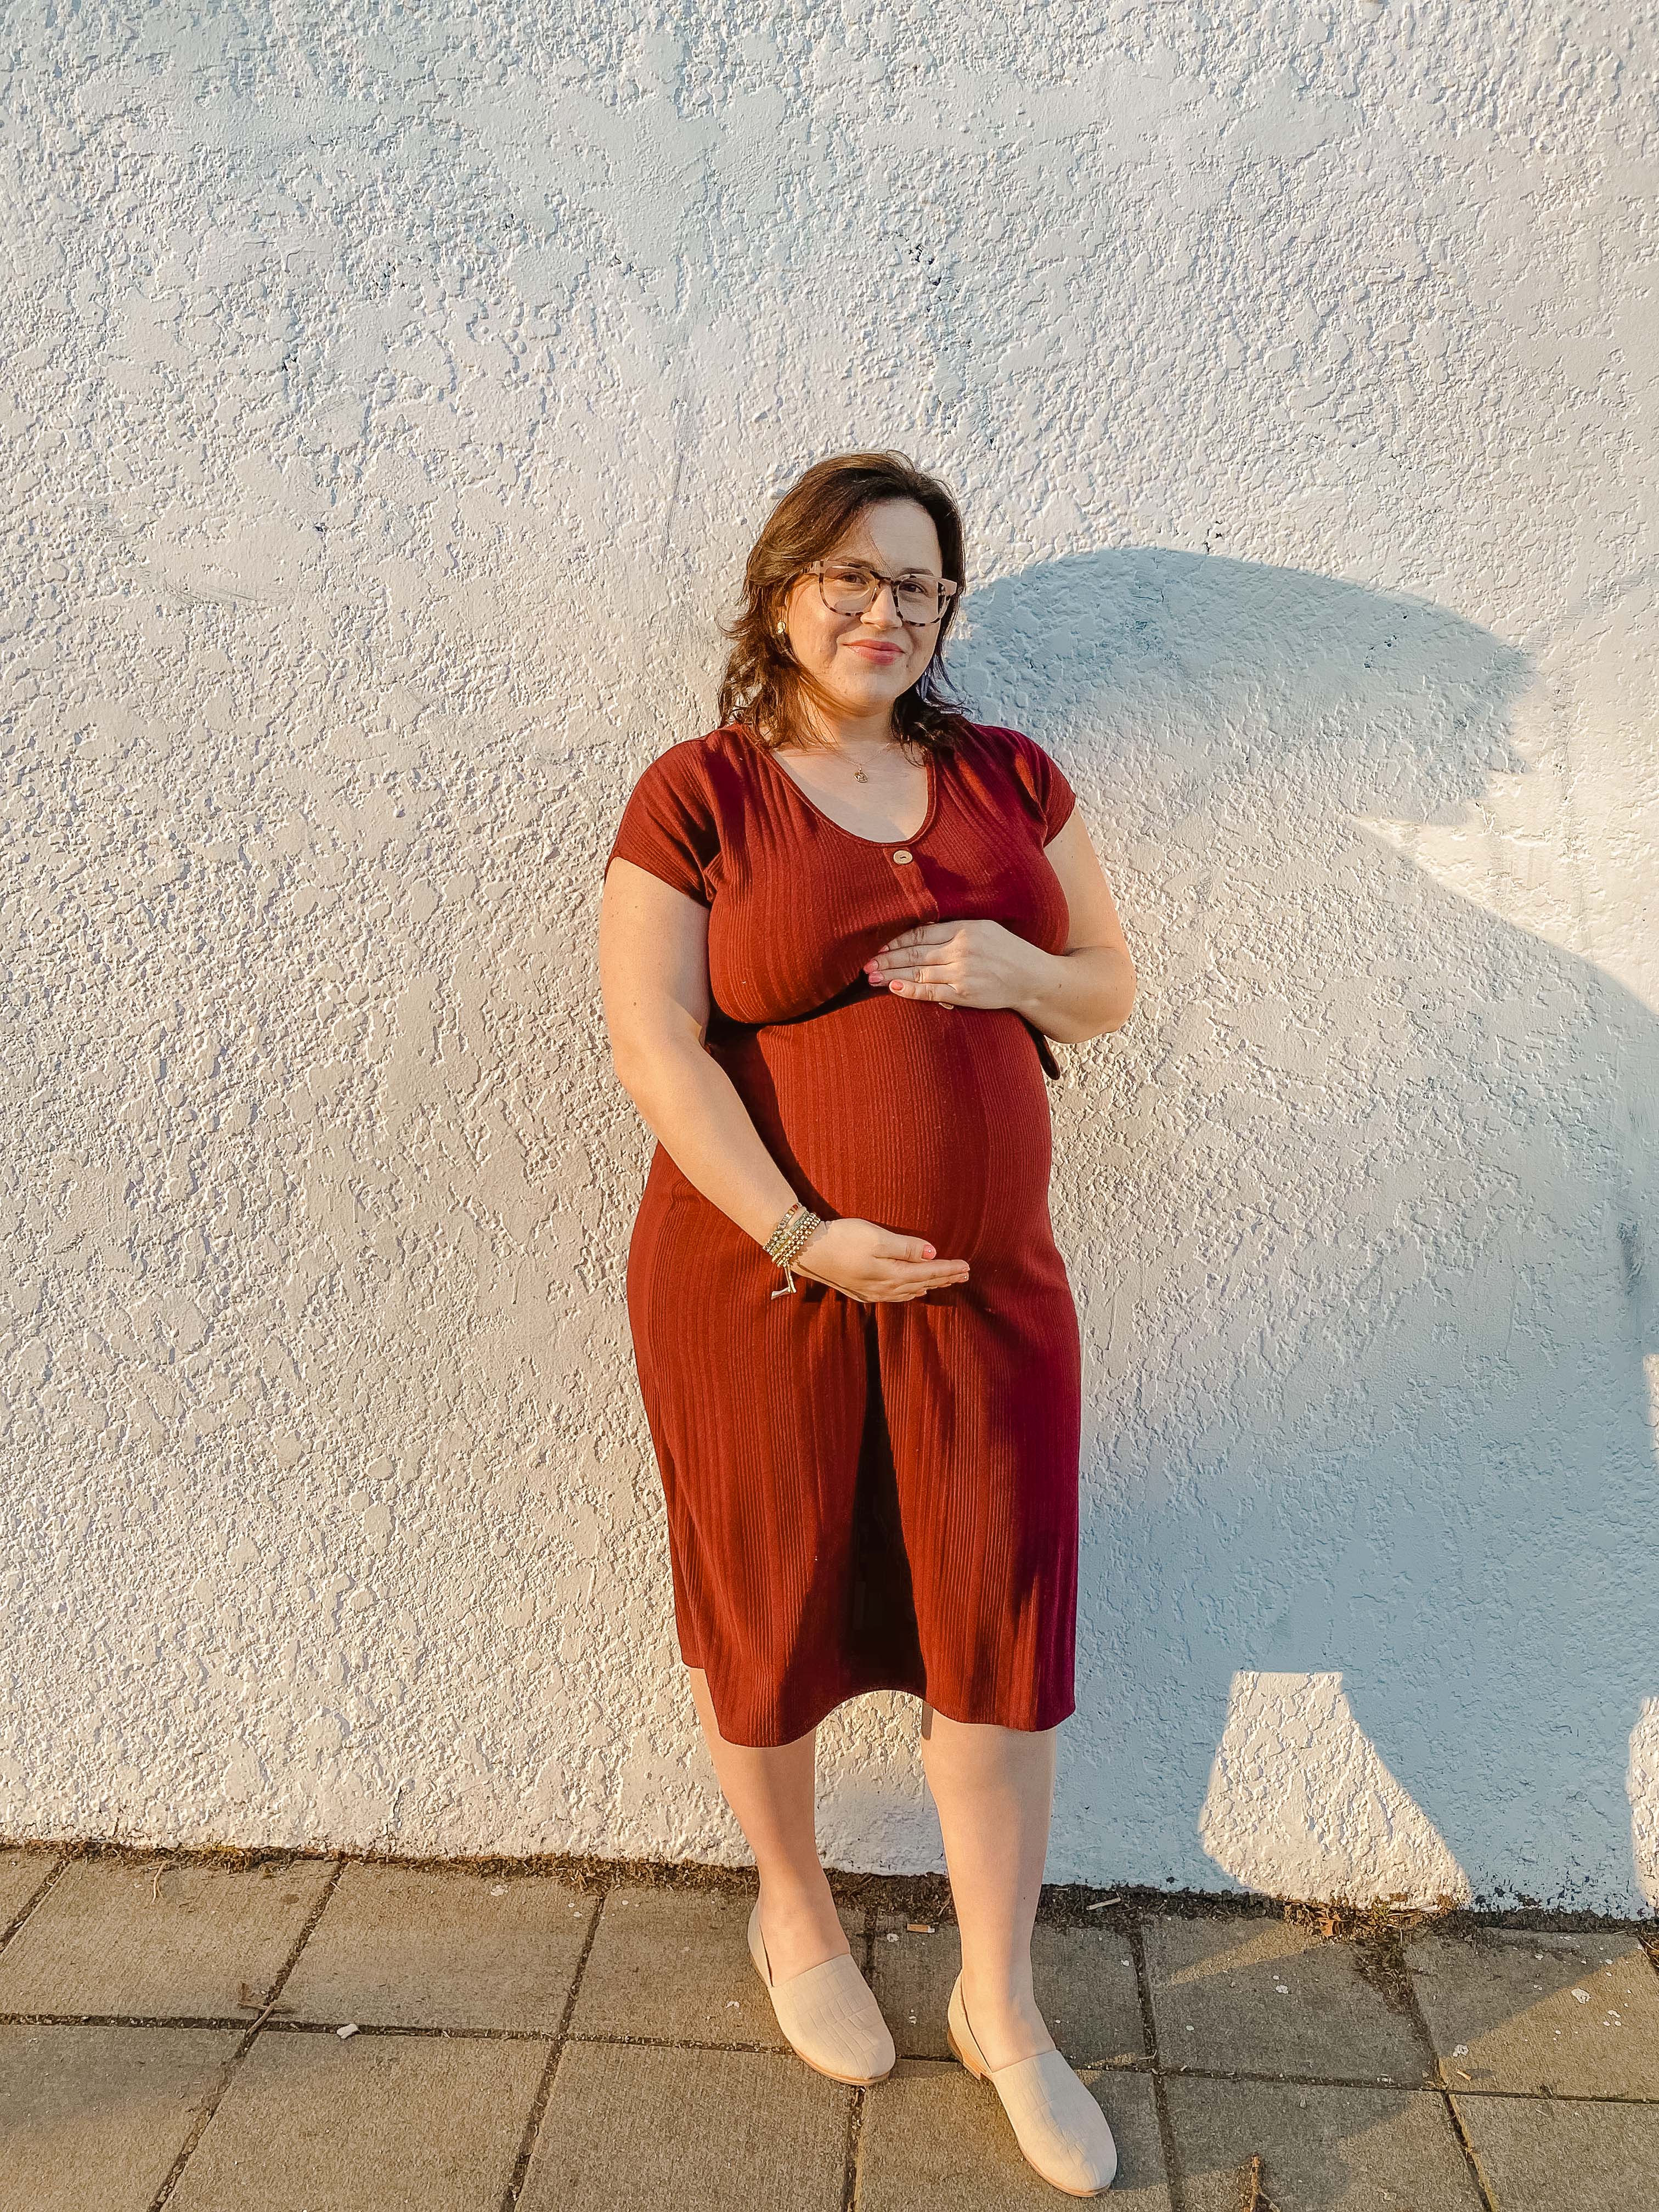 39 Weeks Pregnant Update